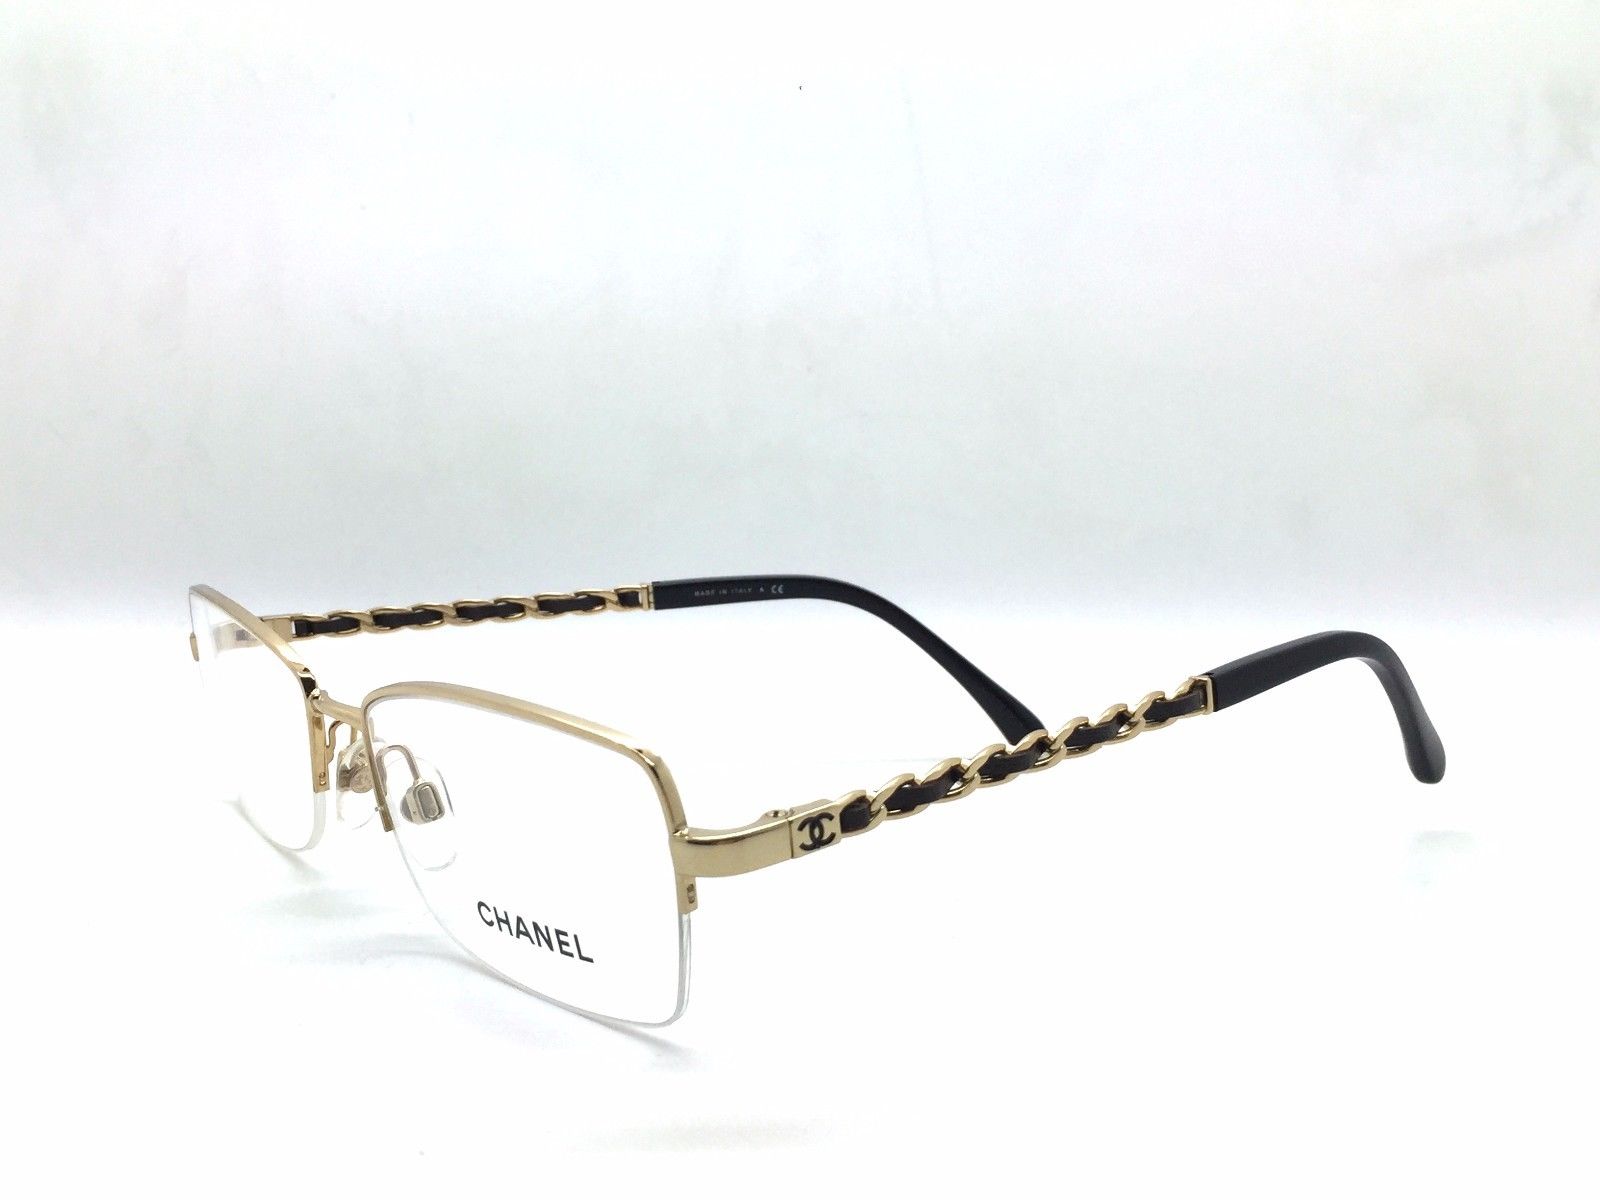 Chanel Eyeglasses - Affordable Designer Eyeglasses